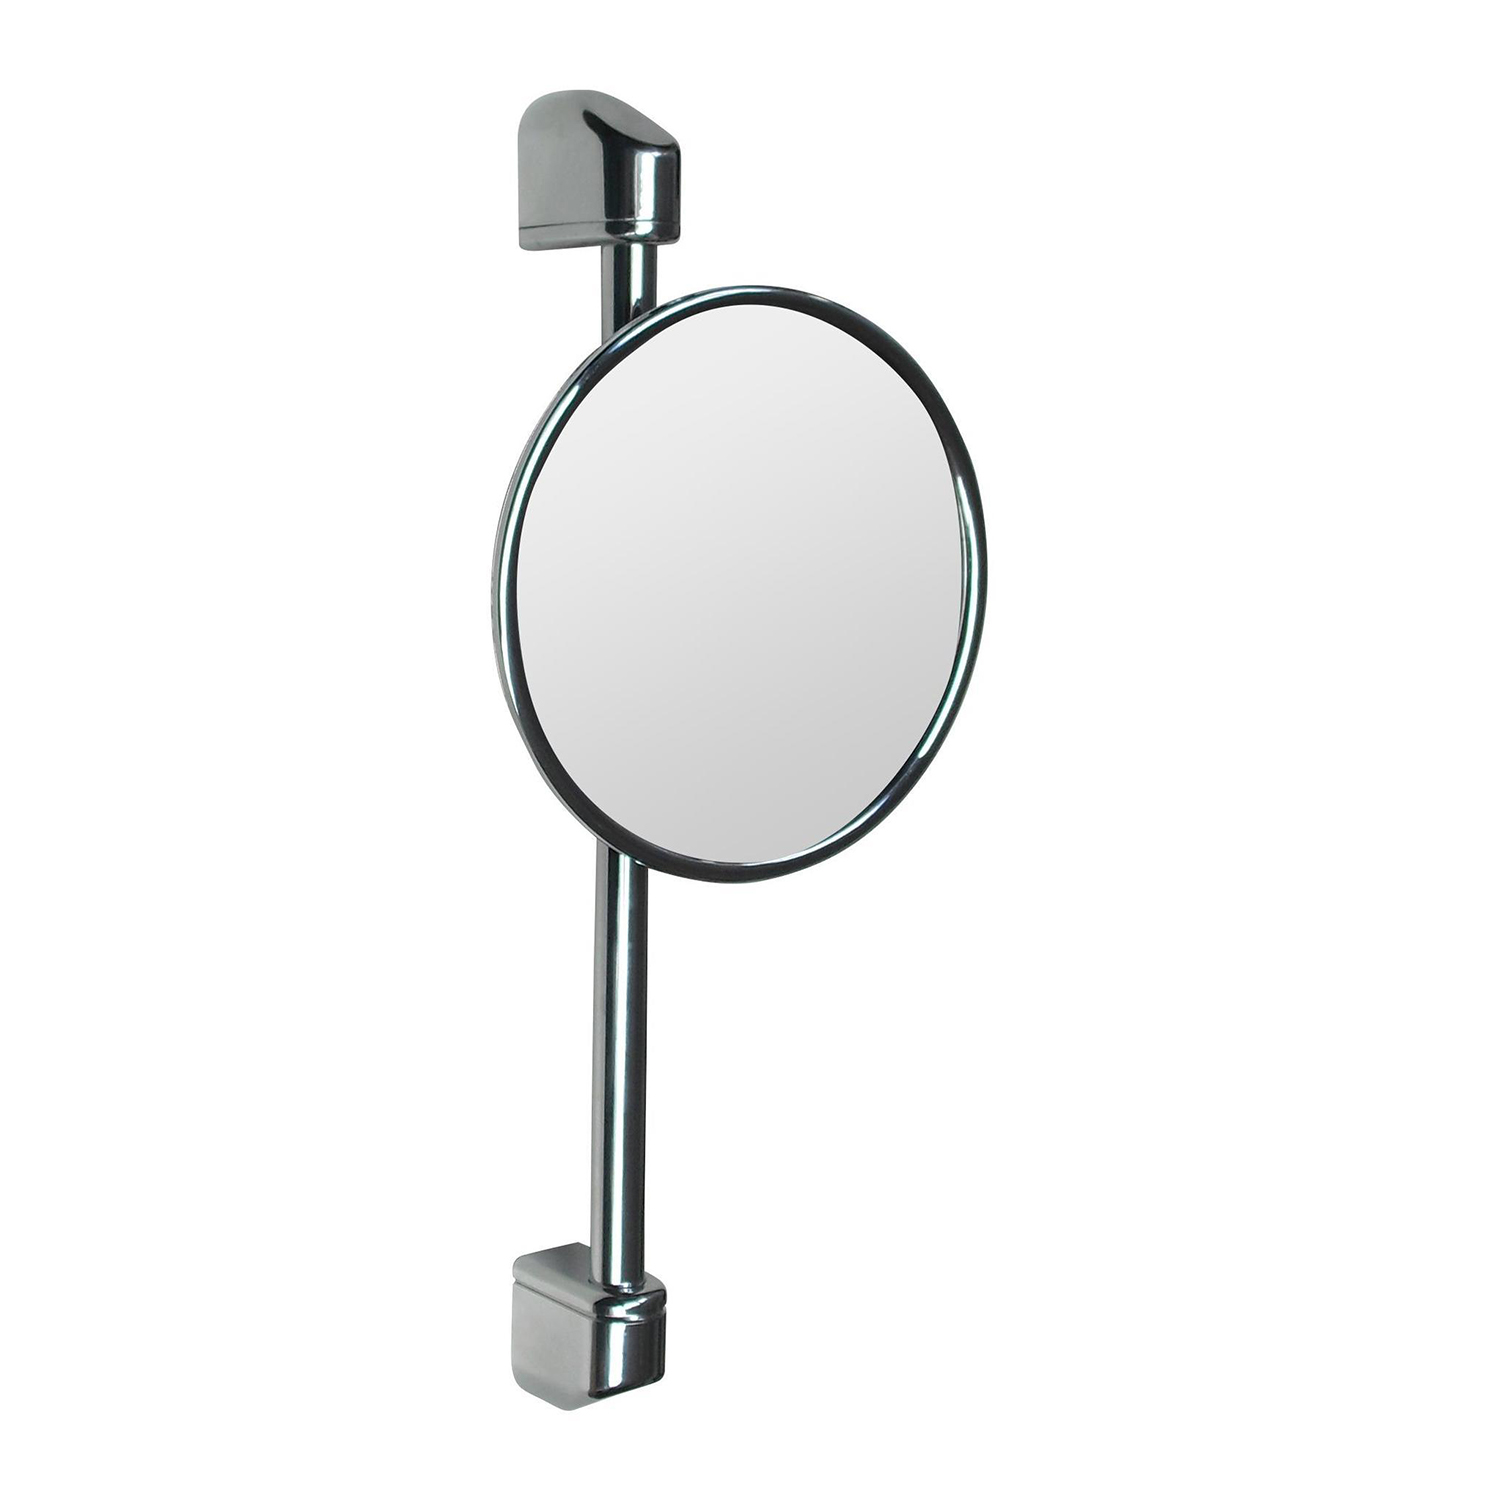 Косметическое зеркало Nofer Reflex 8012 косметическое зеркало caprigo romano 7022 crm